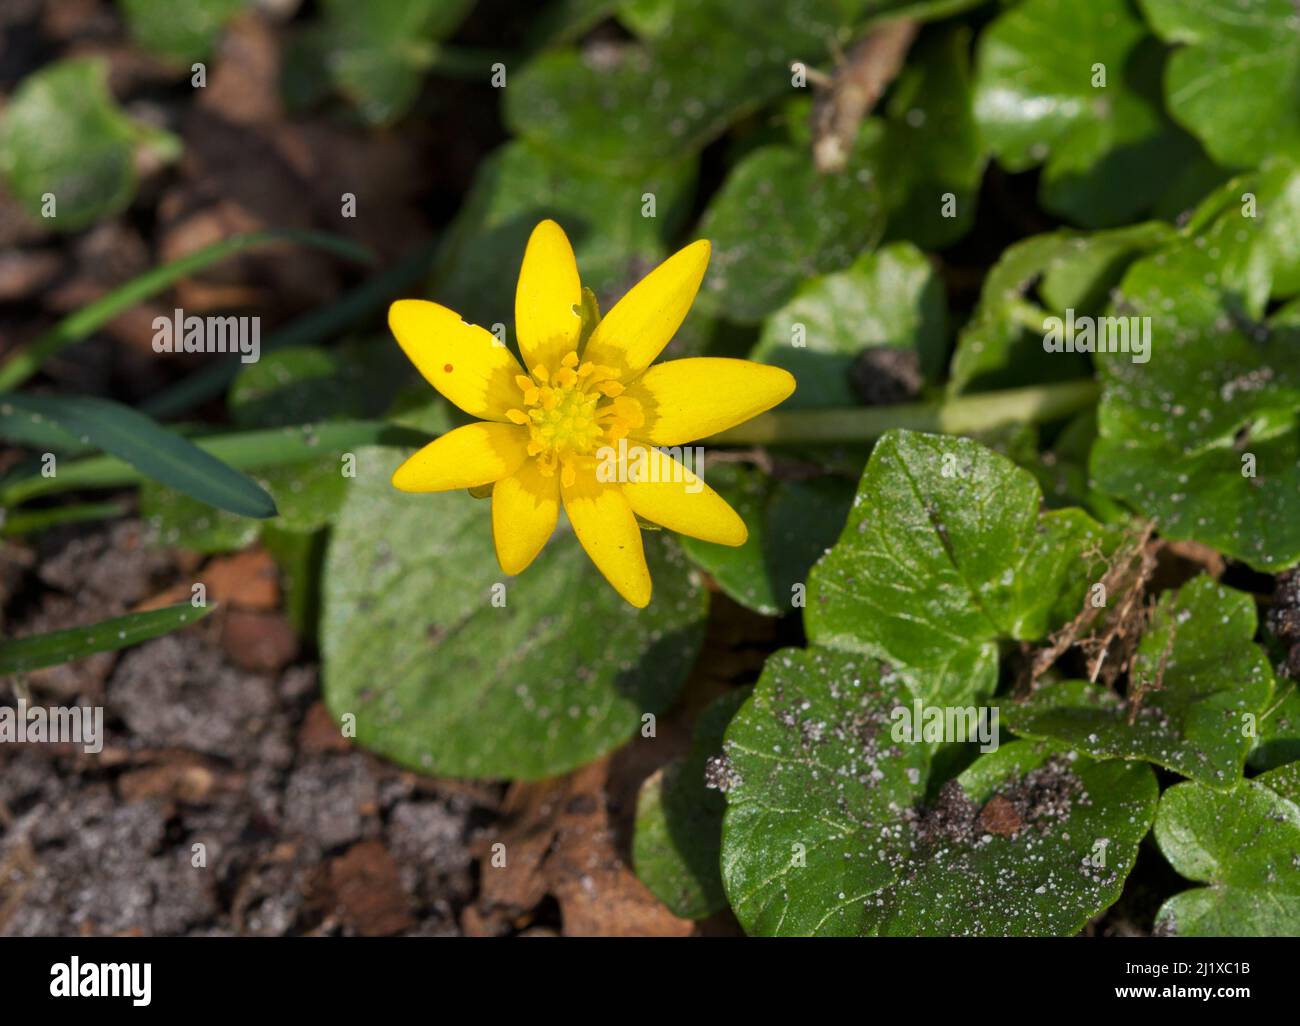 Moindre celandine, une belle fleur jaune au début du printemps Banque D'Images